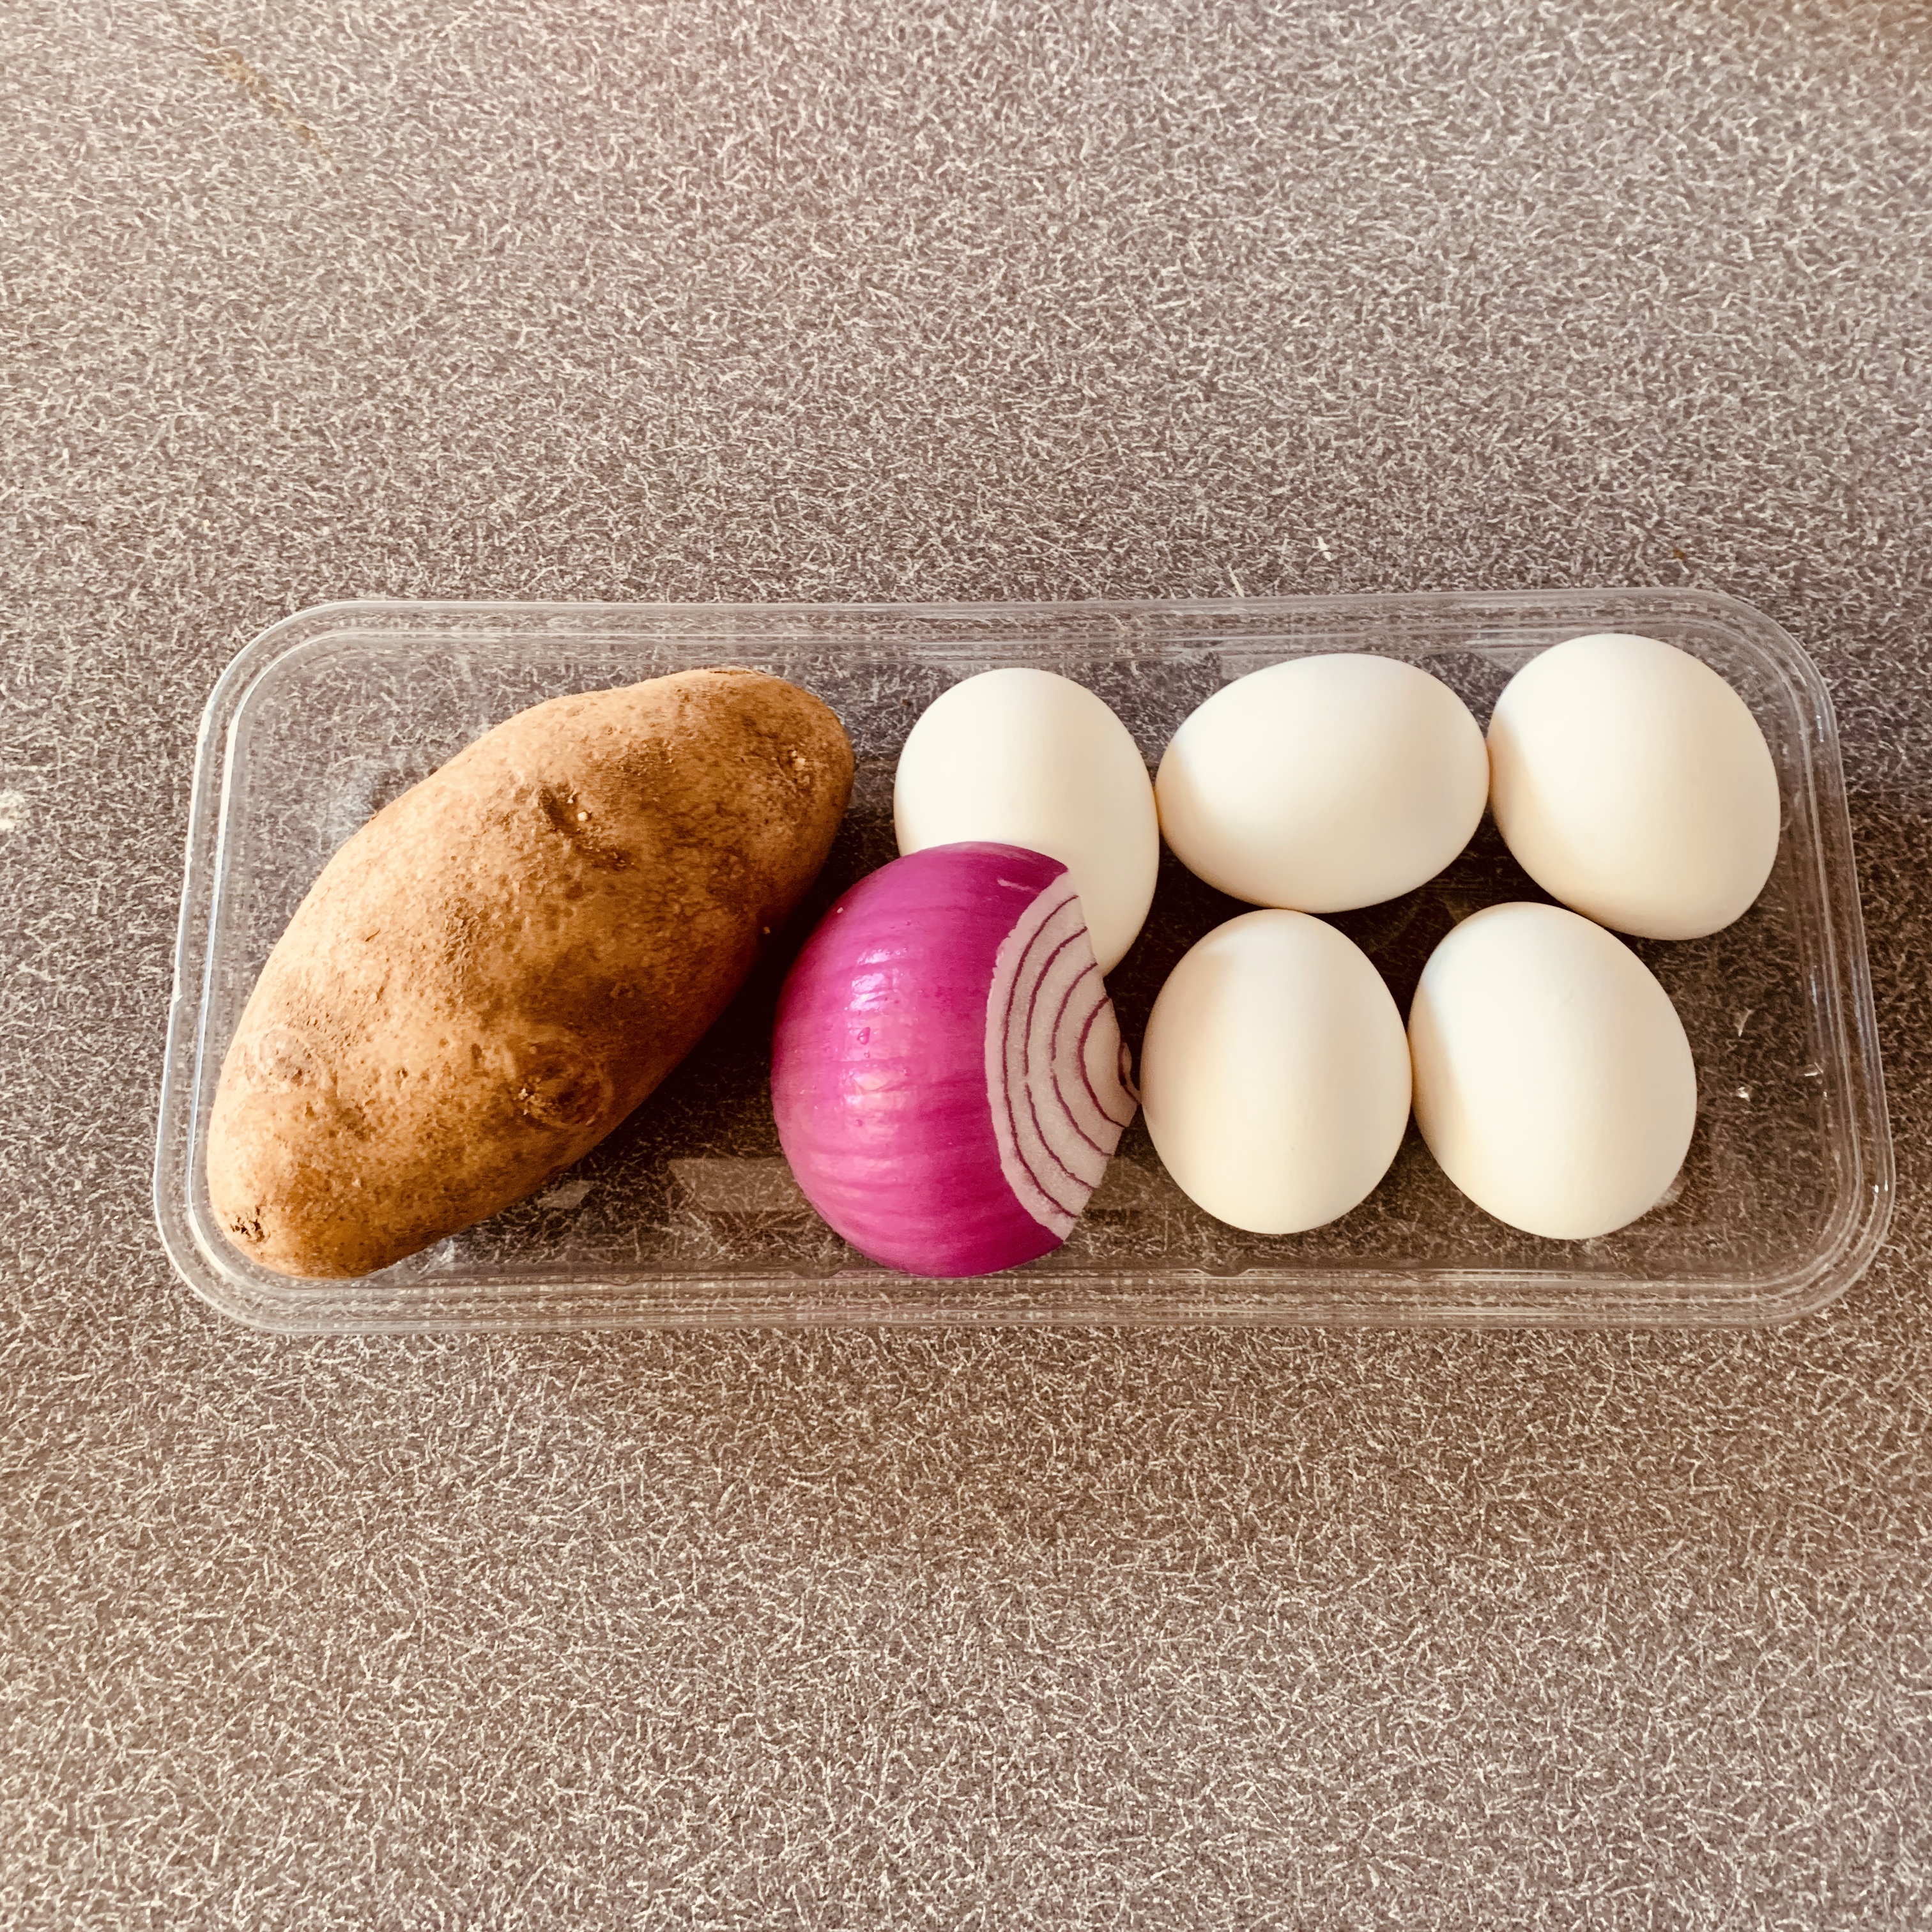 감자-적양파-하얀달걀-5알이-플라스틱-접시에-담겨있는-모습